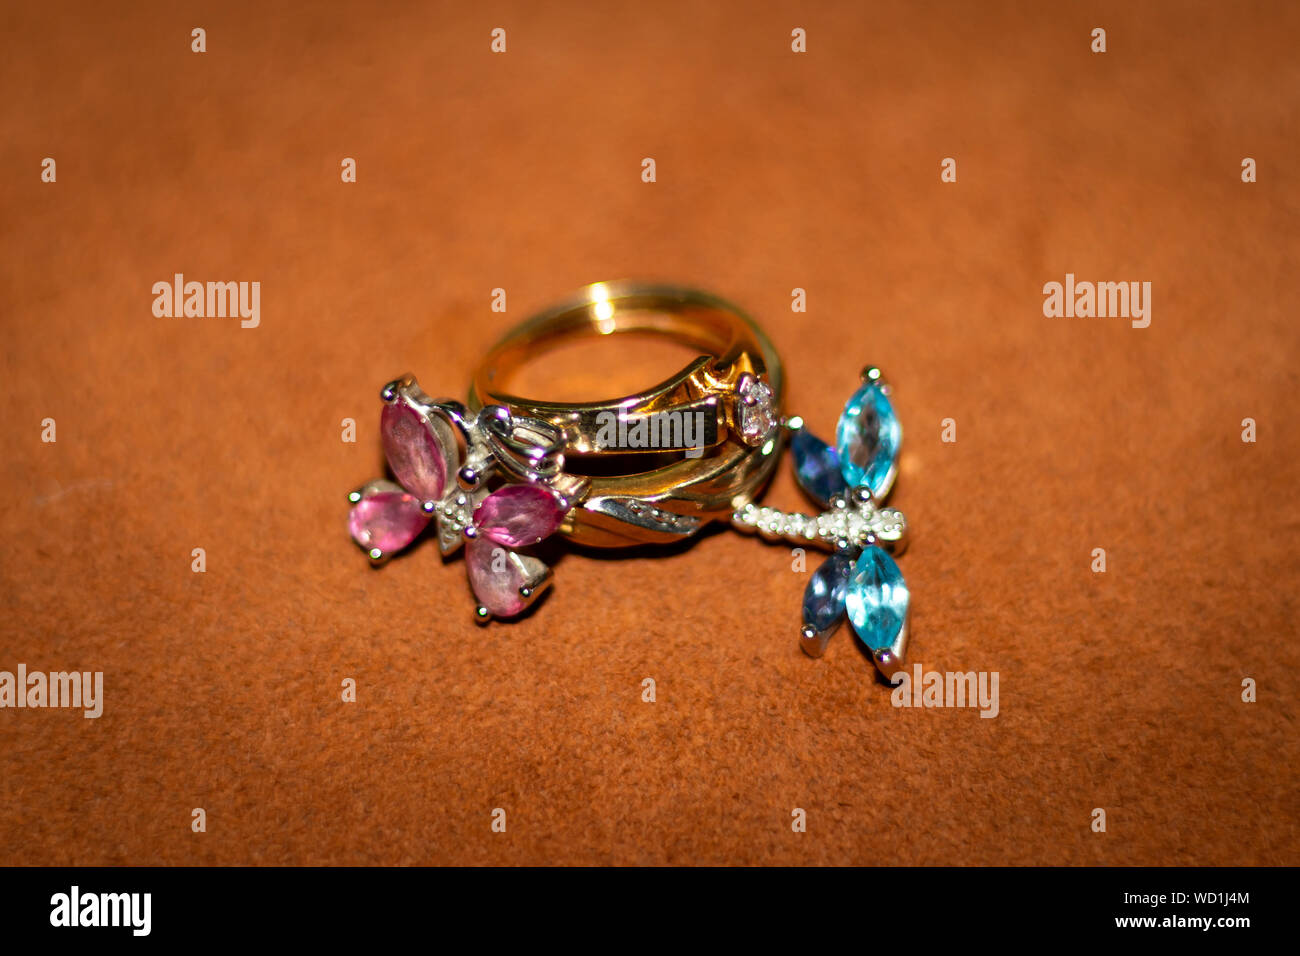 Macro photo of wedding rings and pendants Stock Photo